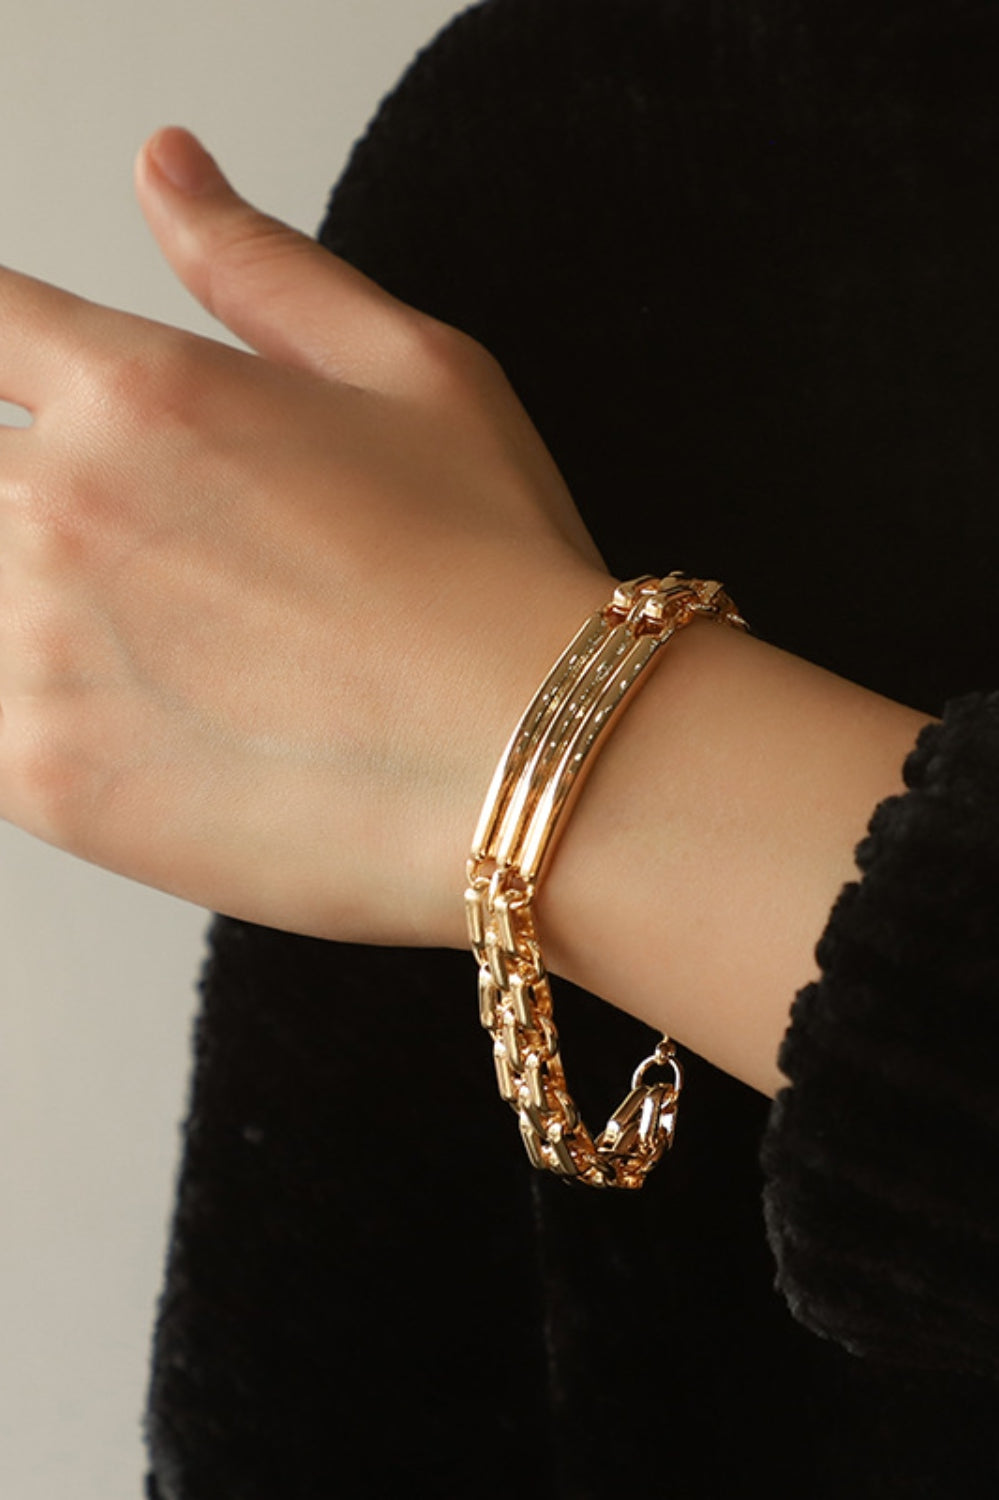 Gold-Plated Alloy Chain Bracelet Trendsi